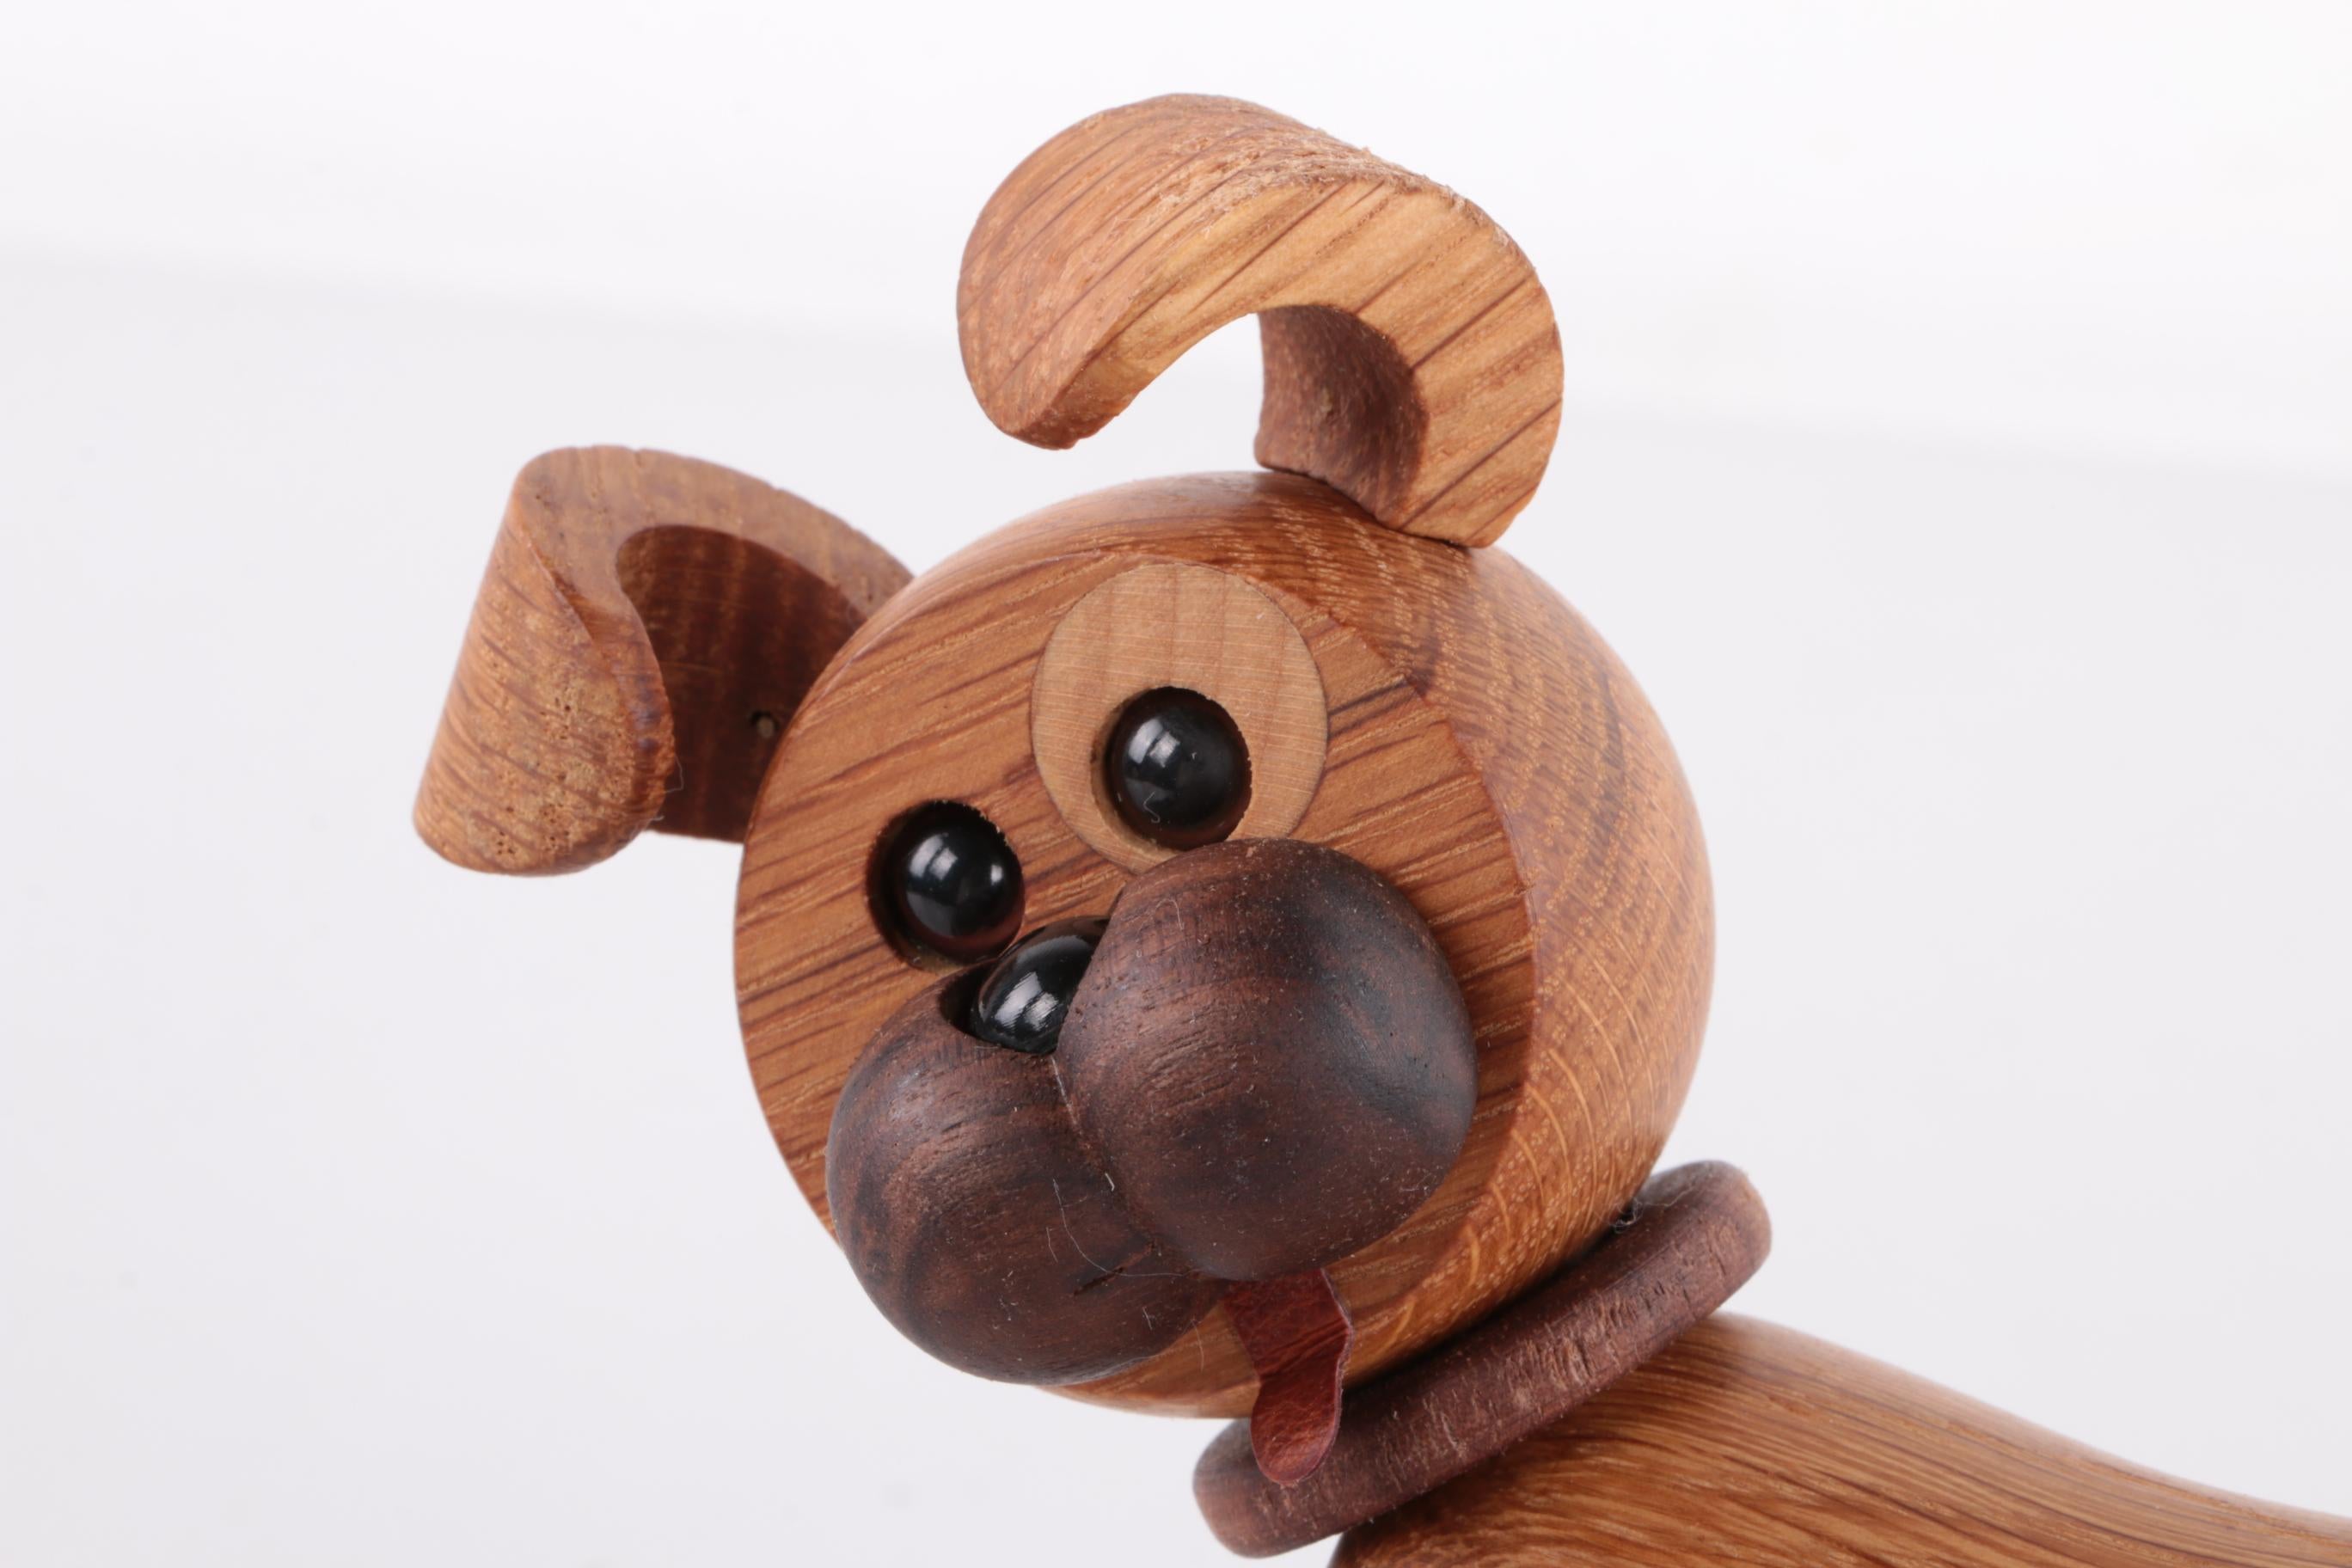 Cheerful Wooden Dog by Chresten Sommer for Spring, Copenhagen, Denmark 2